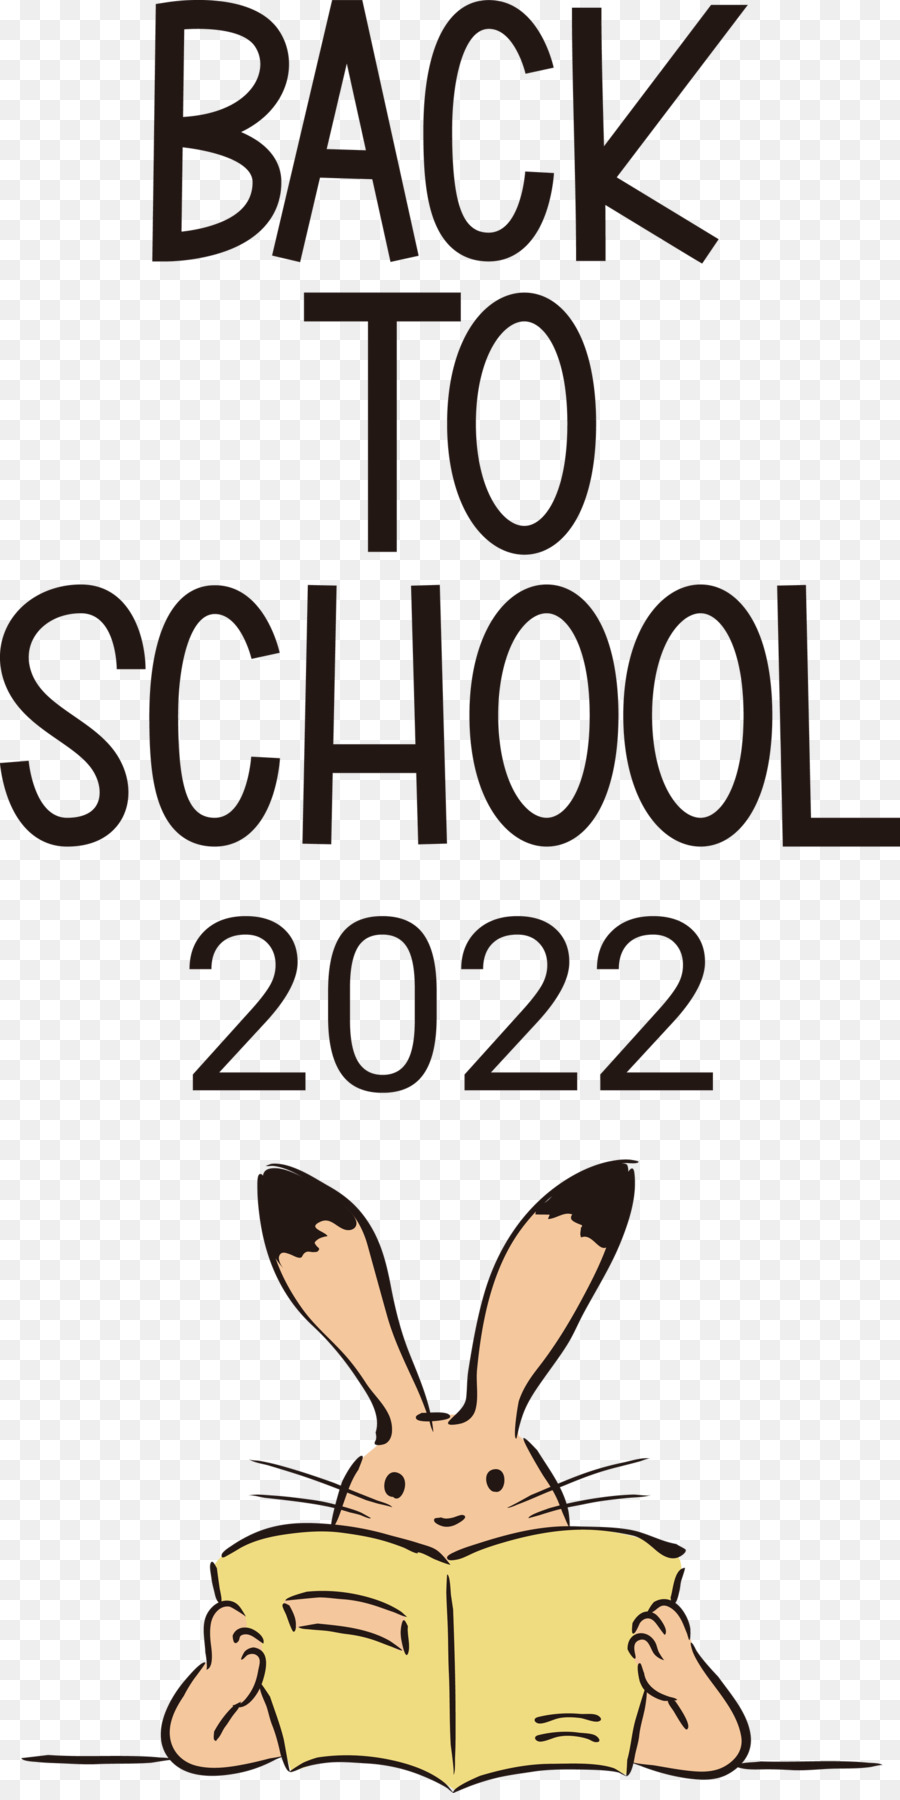 Torna a scuola 2022 Istruzione - 